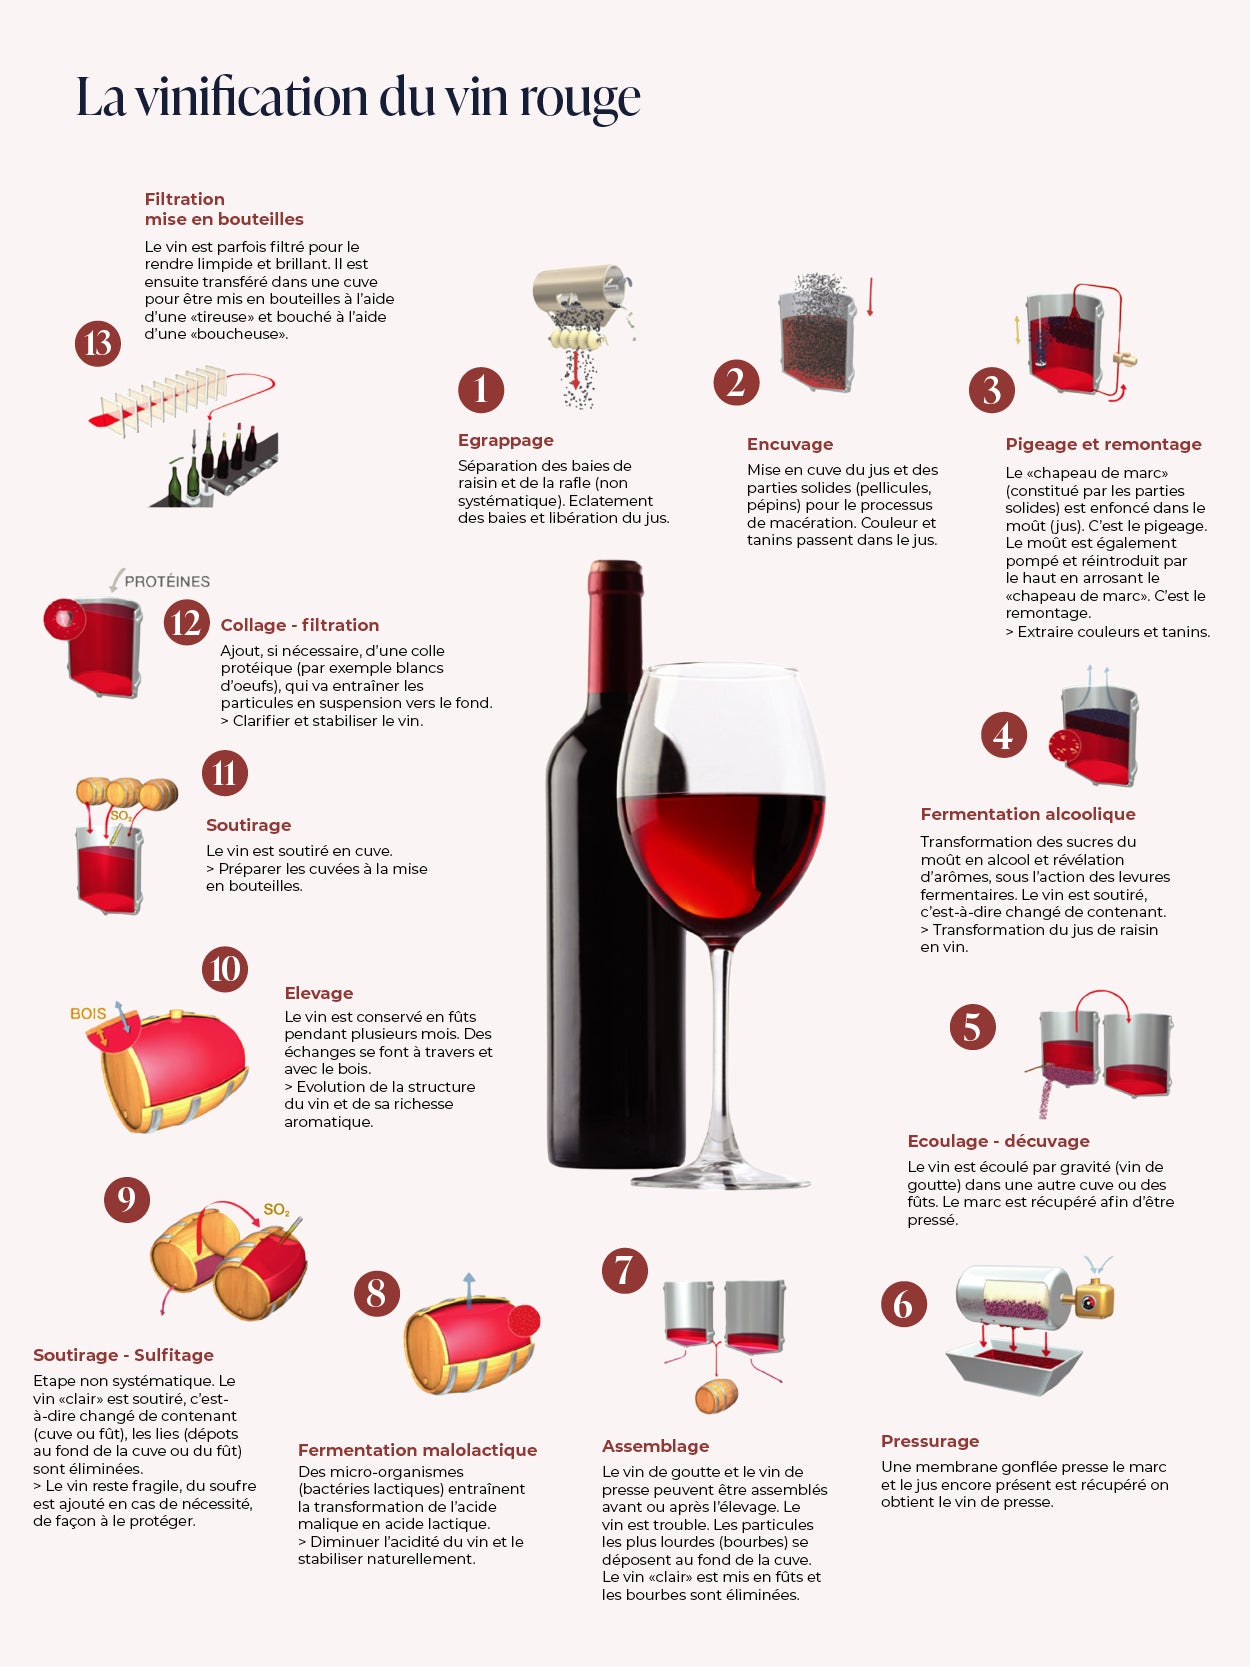 Vinification : Comment est fait le vin ?